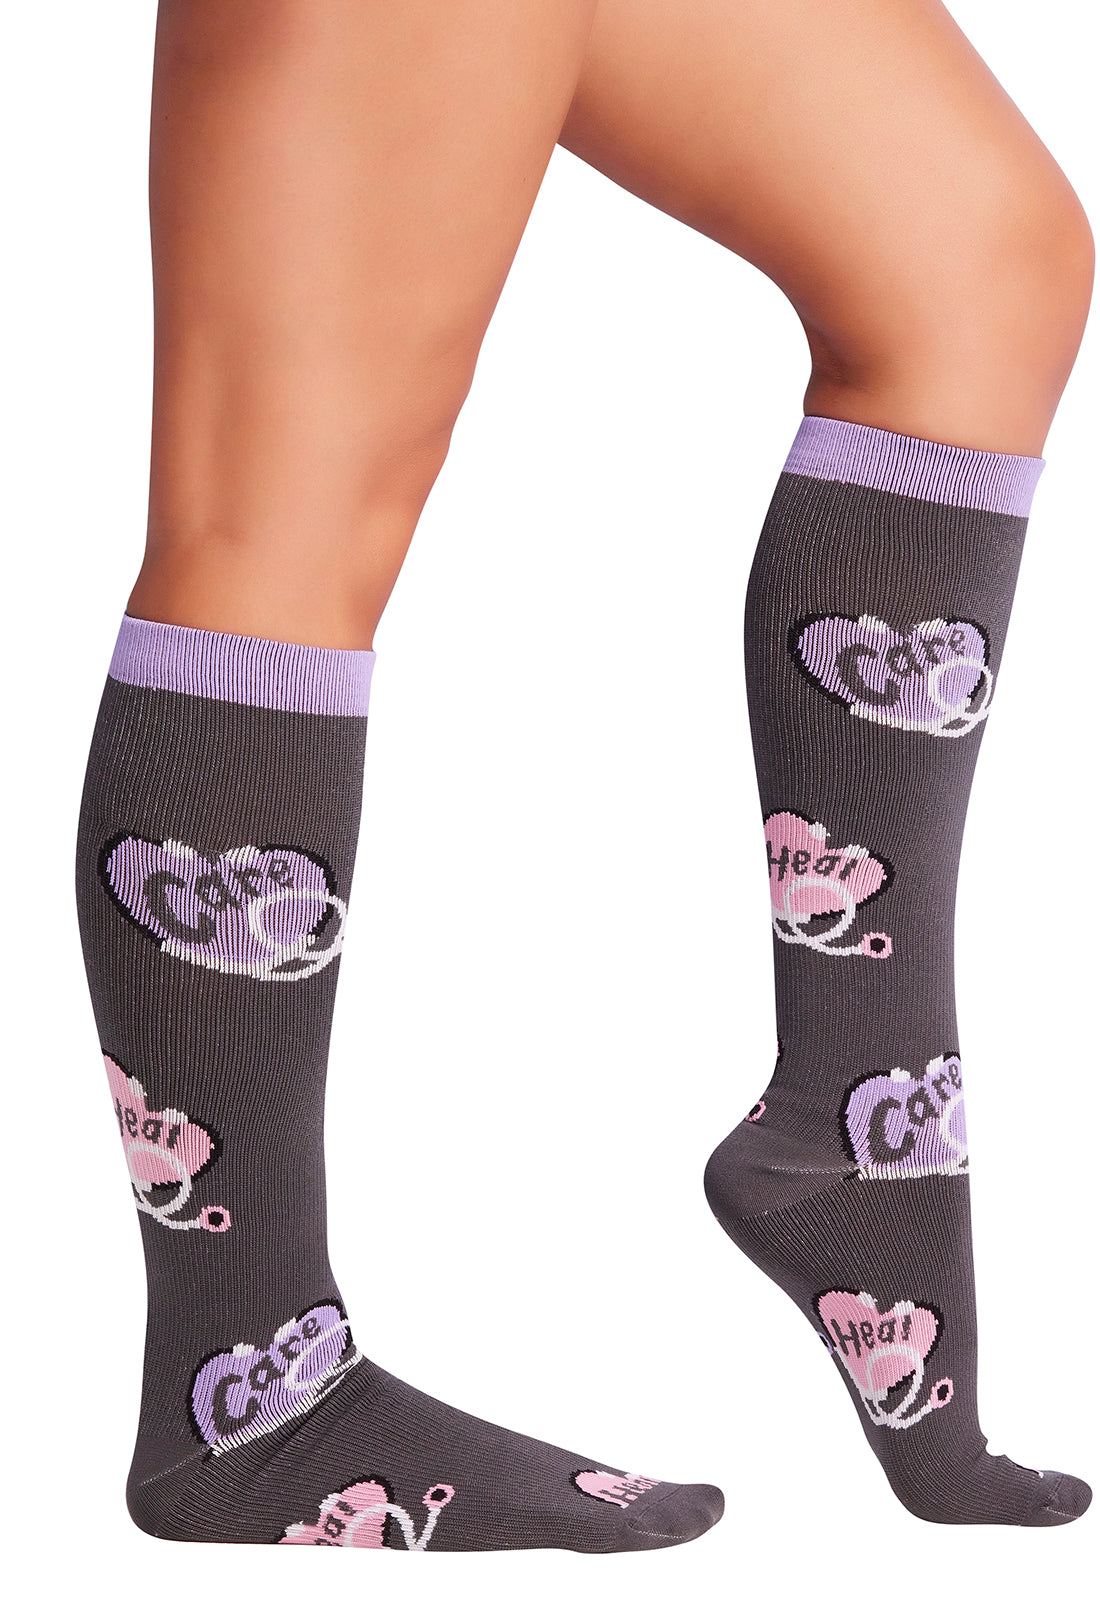 Regular Fit - Compression Socks 10-15mmHg Compression Socks Cherokee Legwear Heart Scopes  